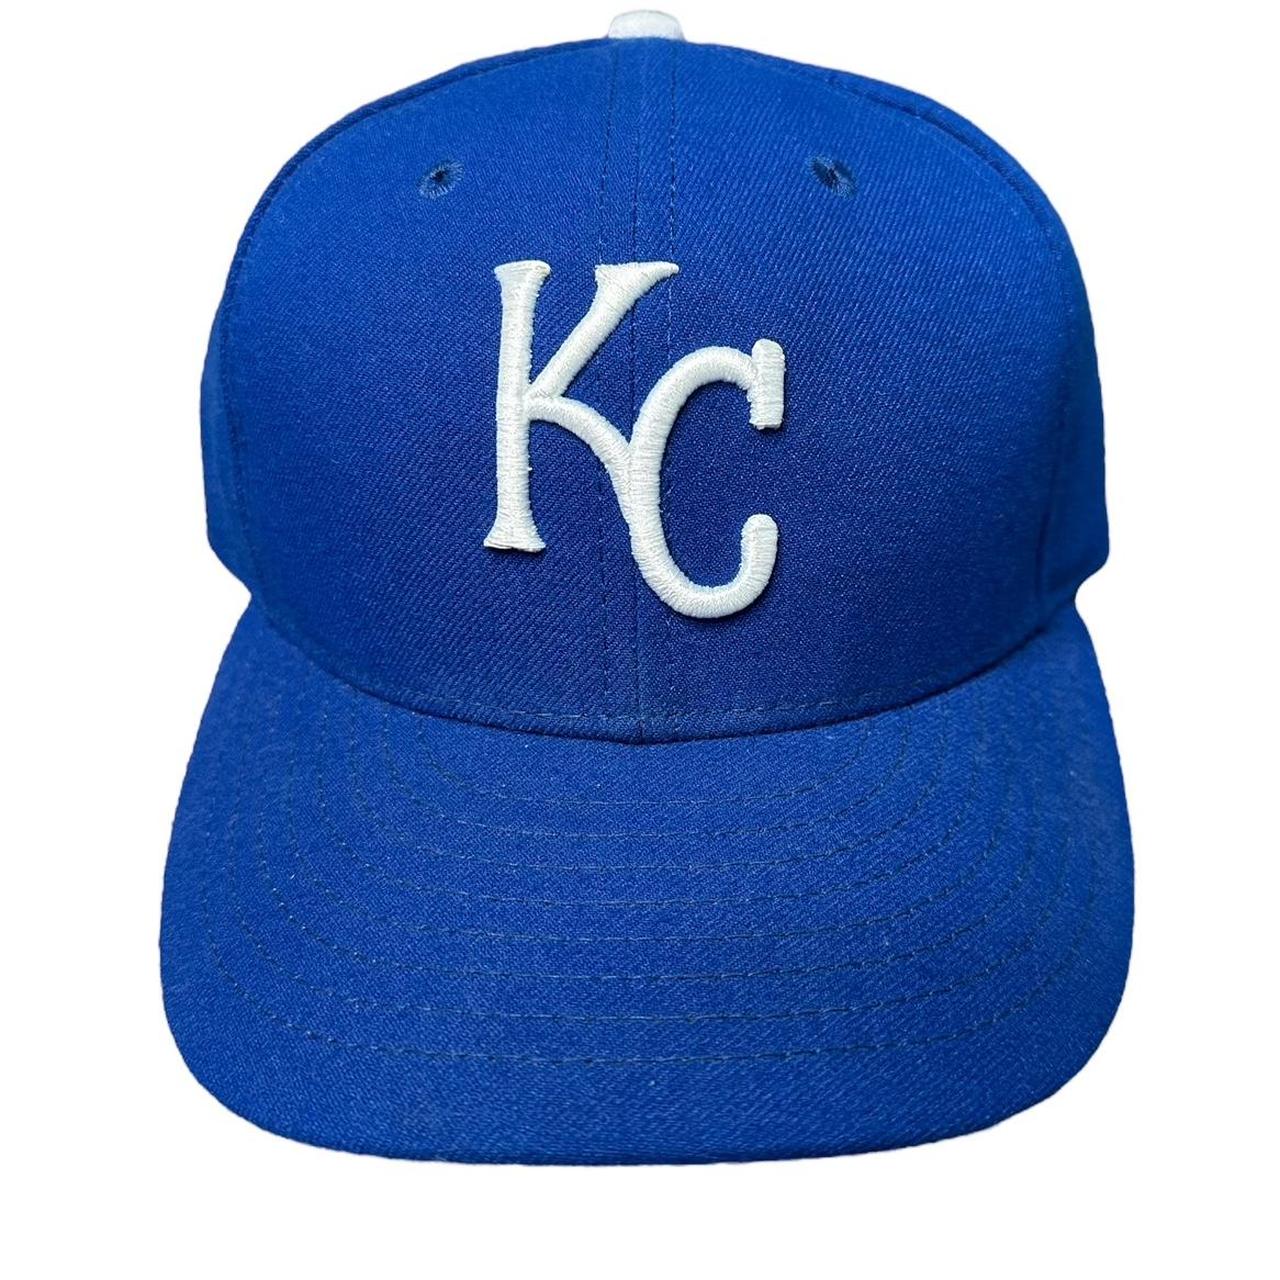 KC Royals fitted size 7 Kansas City new era - Depop